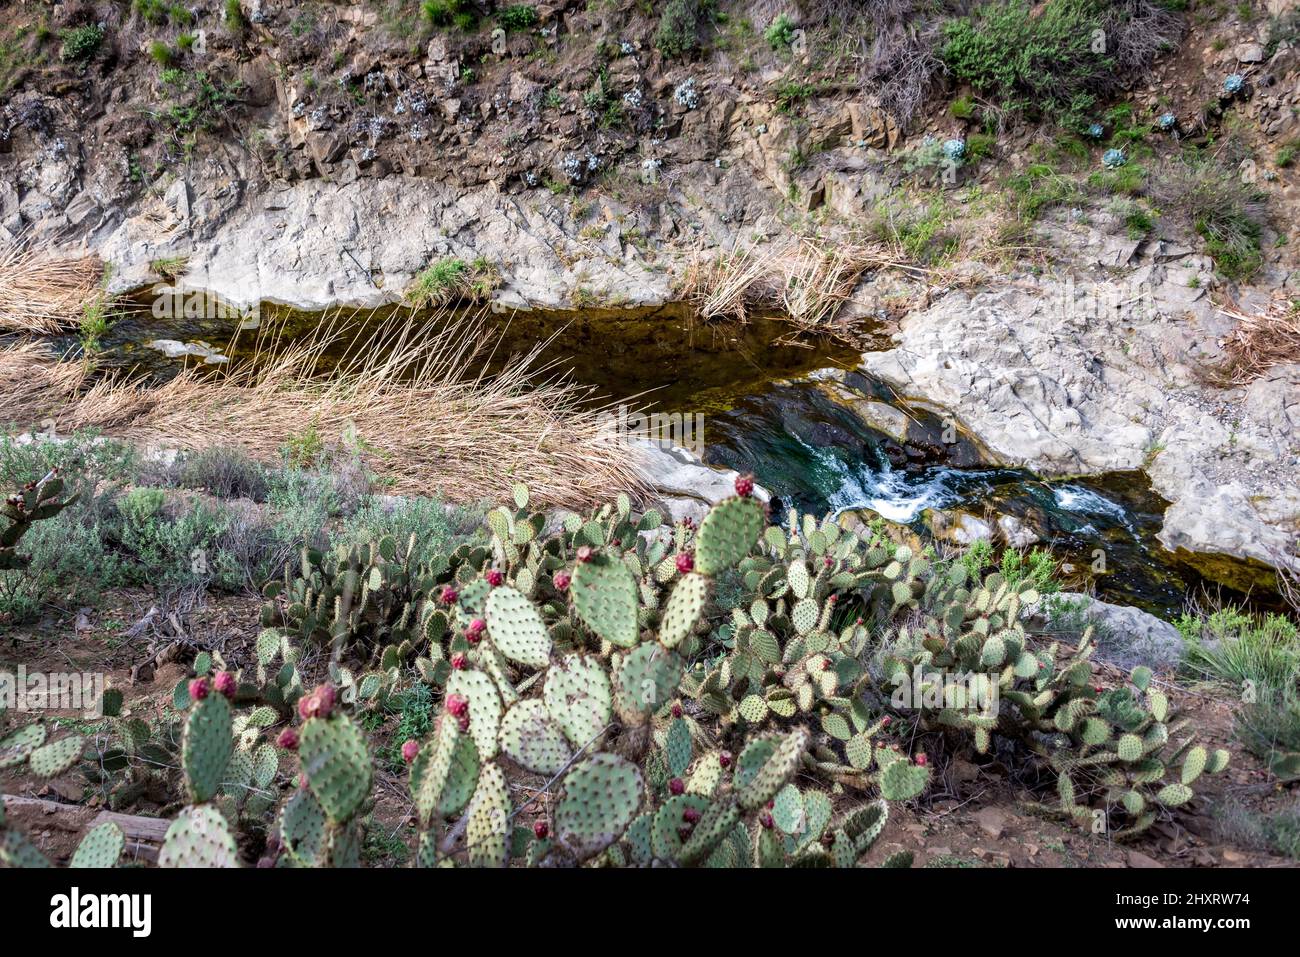 Los cactus de pera pickly crecen junto al arroyo North Fork Arroyo Conejo, justo encima de Paradise Falls, un popular destino de senderismo en el sur de California Foto de stock